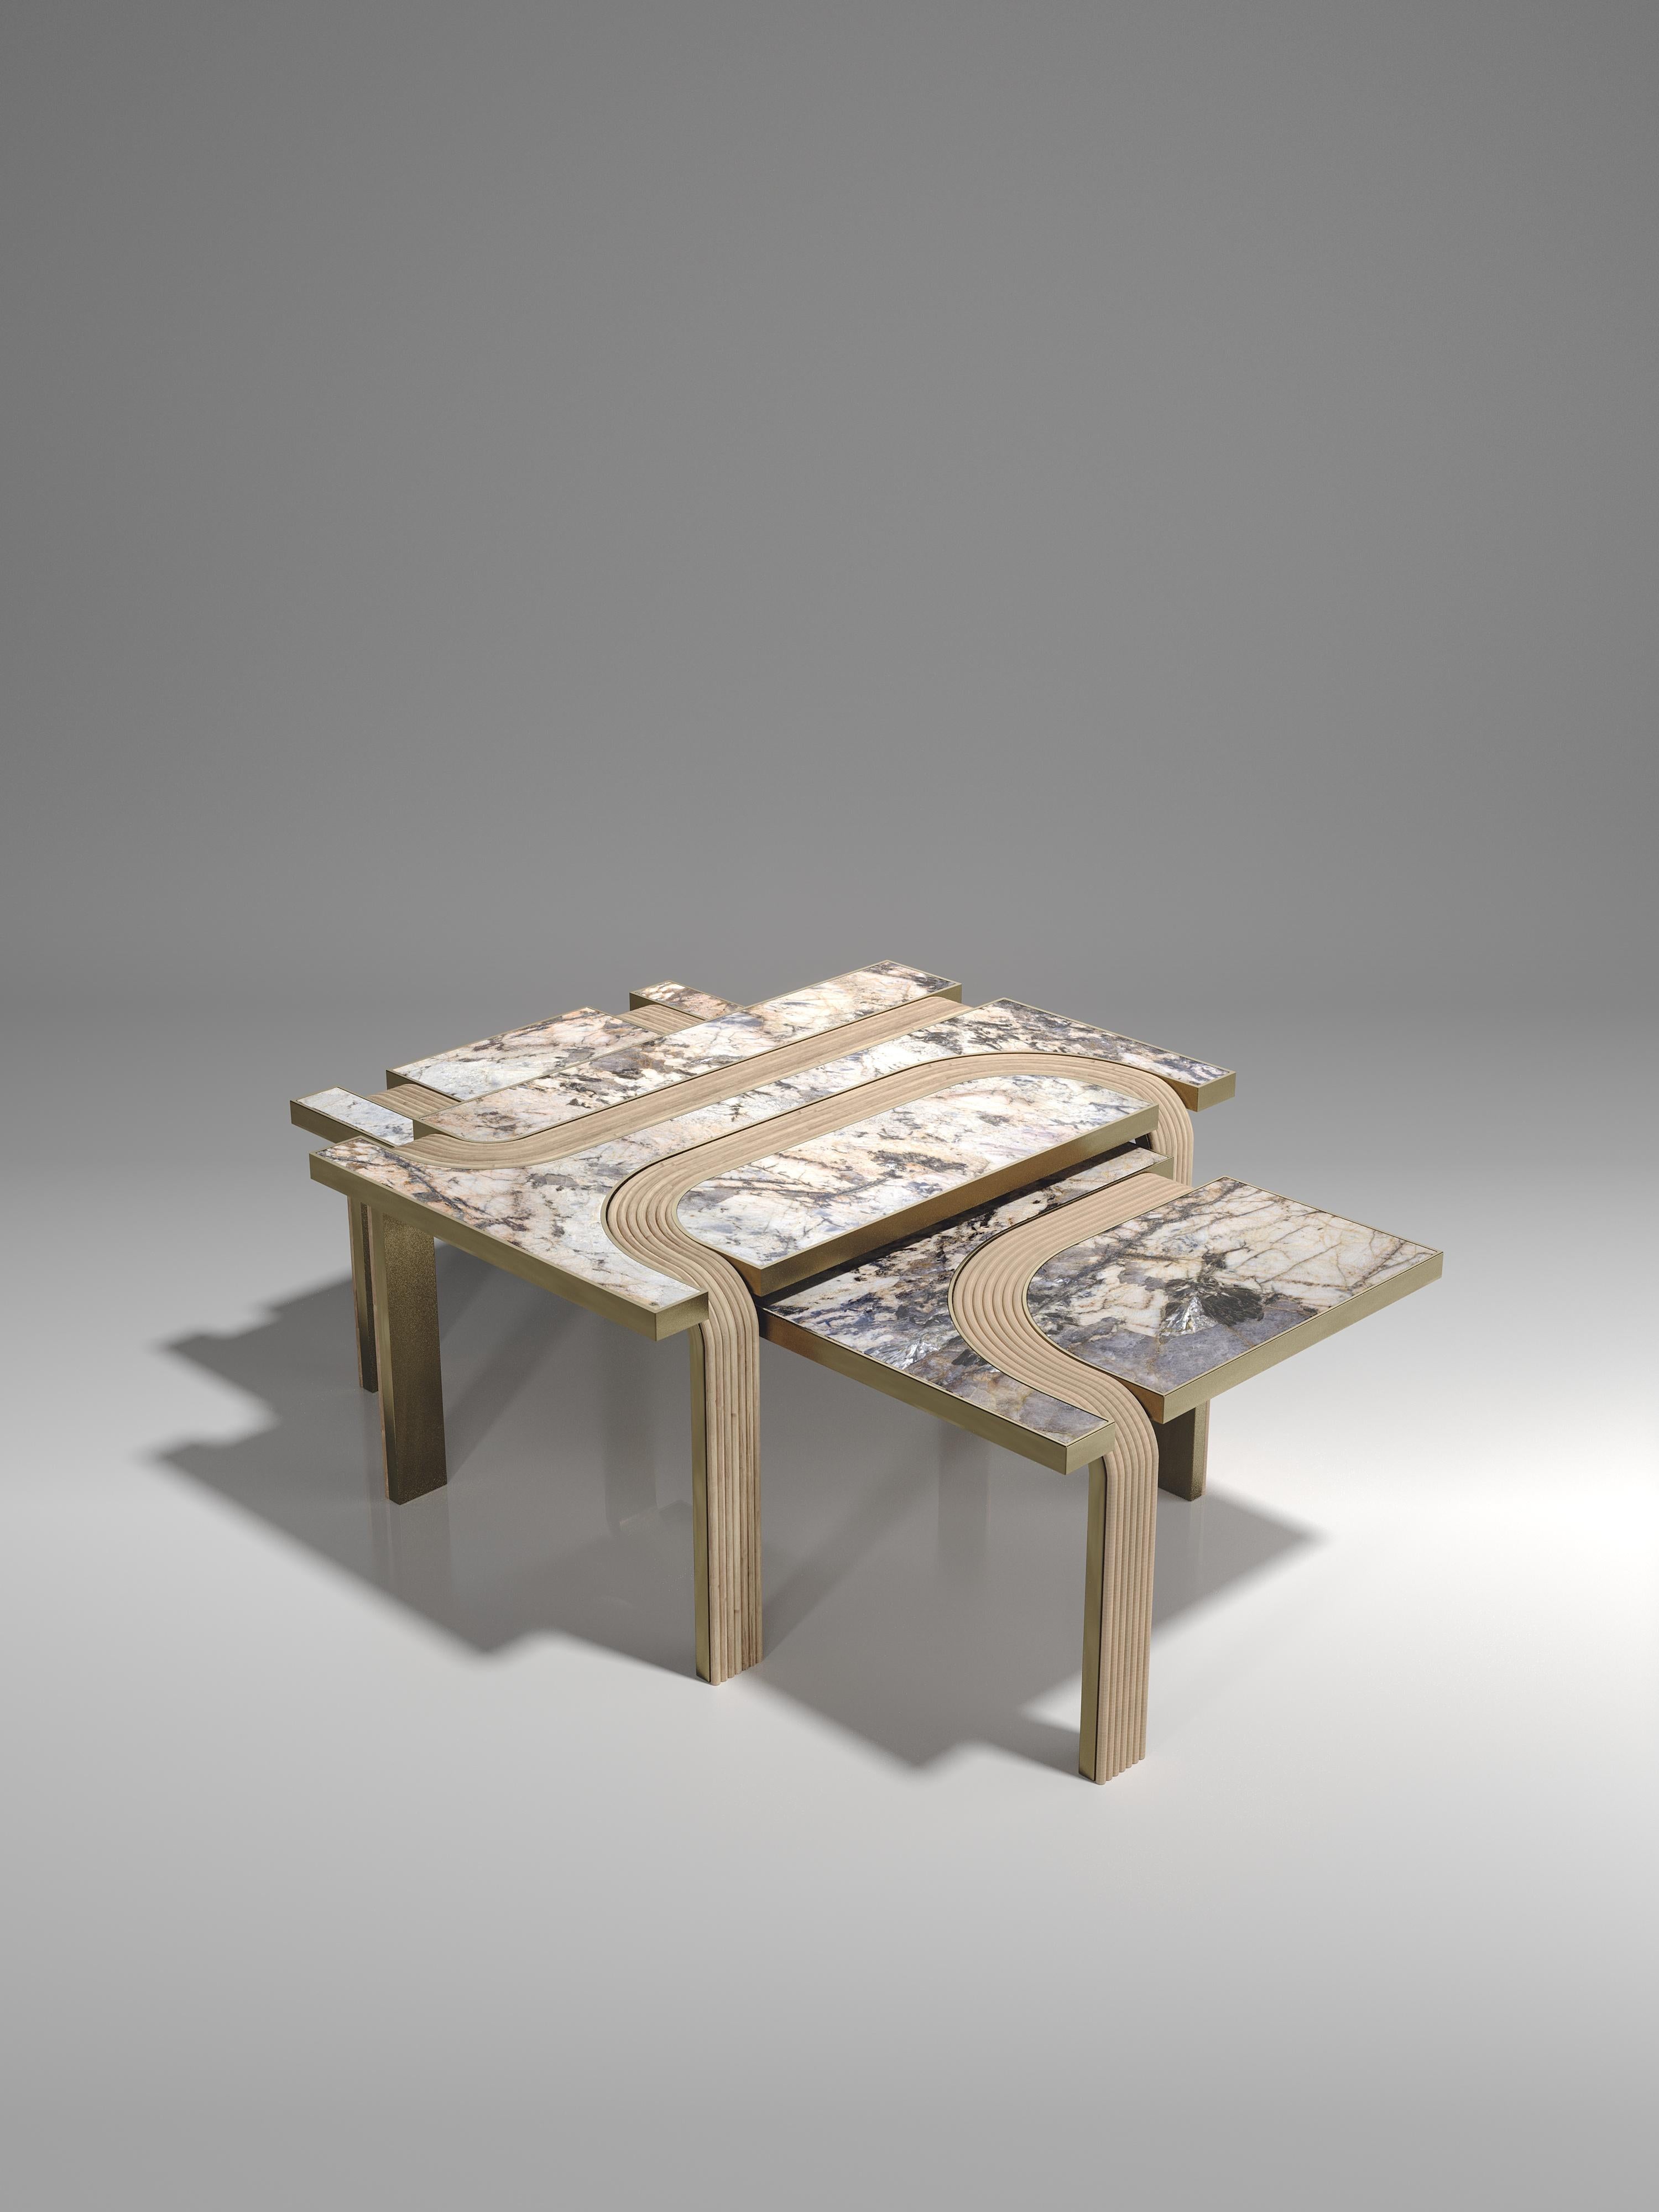 L'ensemble de 2 tables basses gigognes Licol de R&Y Augousti fait partie du lancement de leur nouvelle capsule de rotin. Les pièces explorent l'ADN emblématique de la marque, qui consiste à transformer l'artisanat du vieux continent en un produit